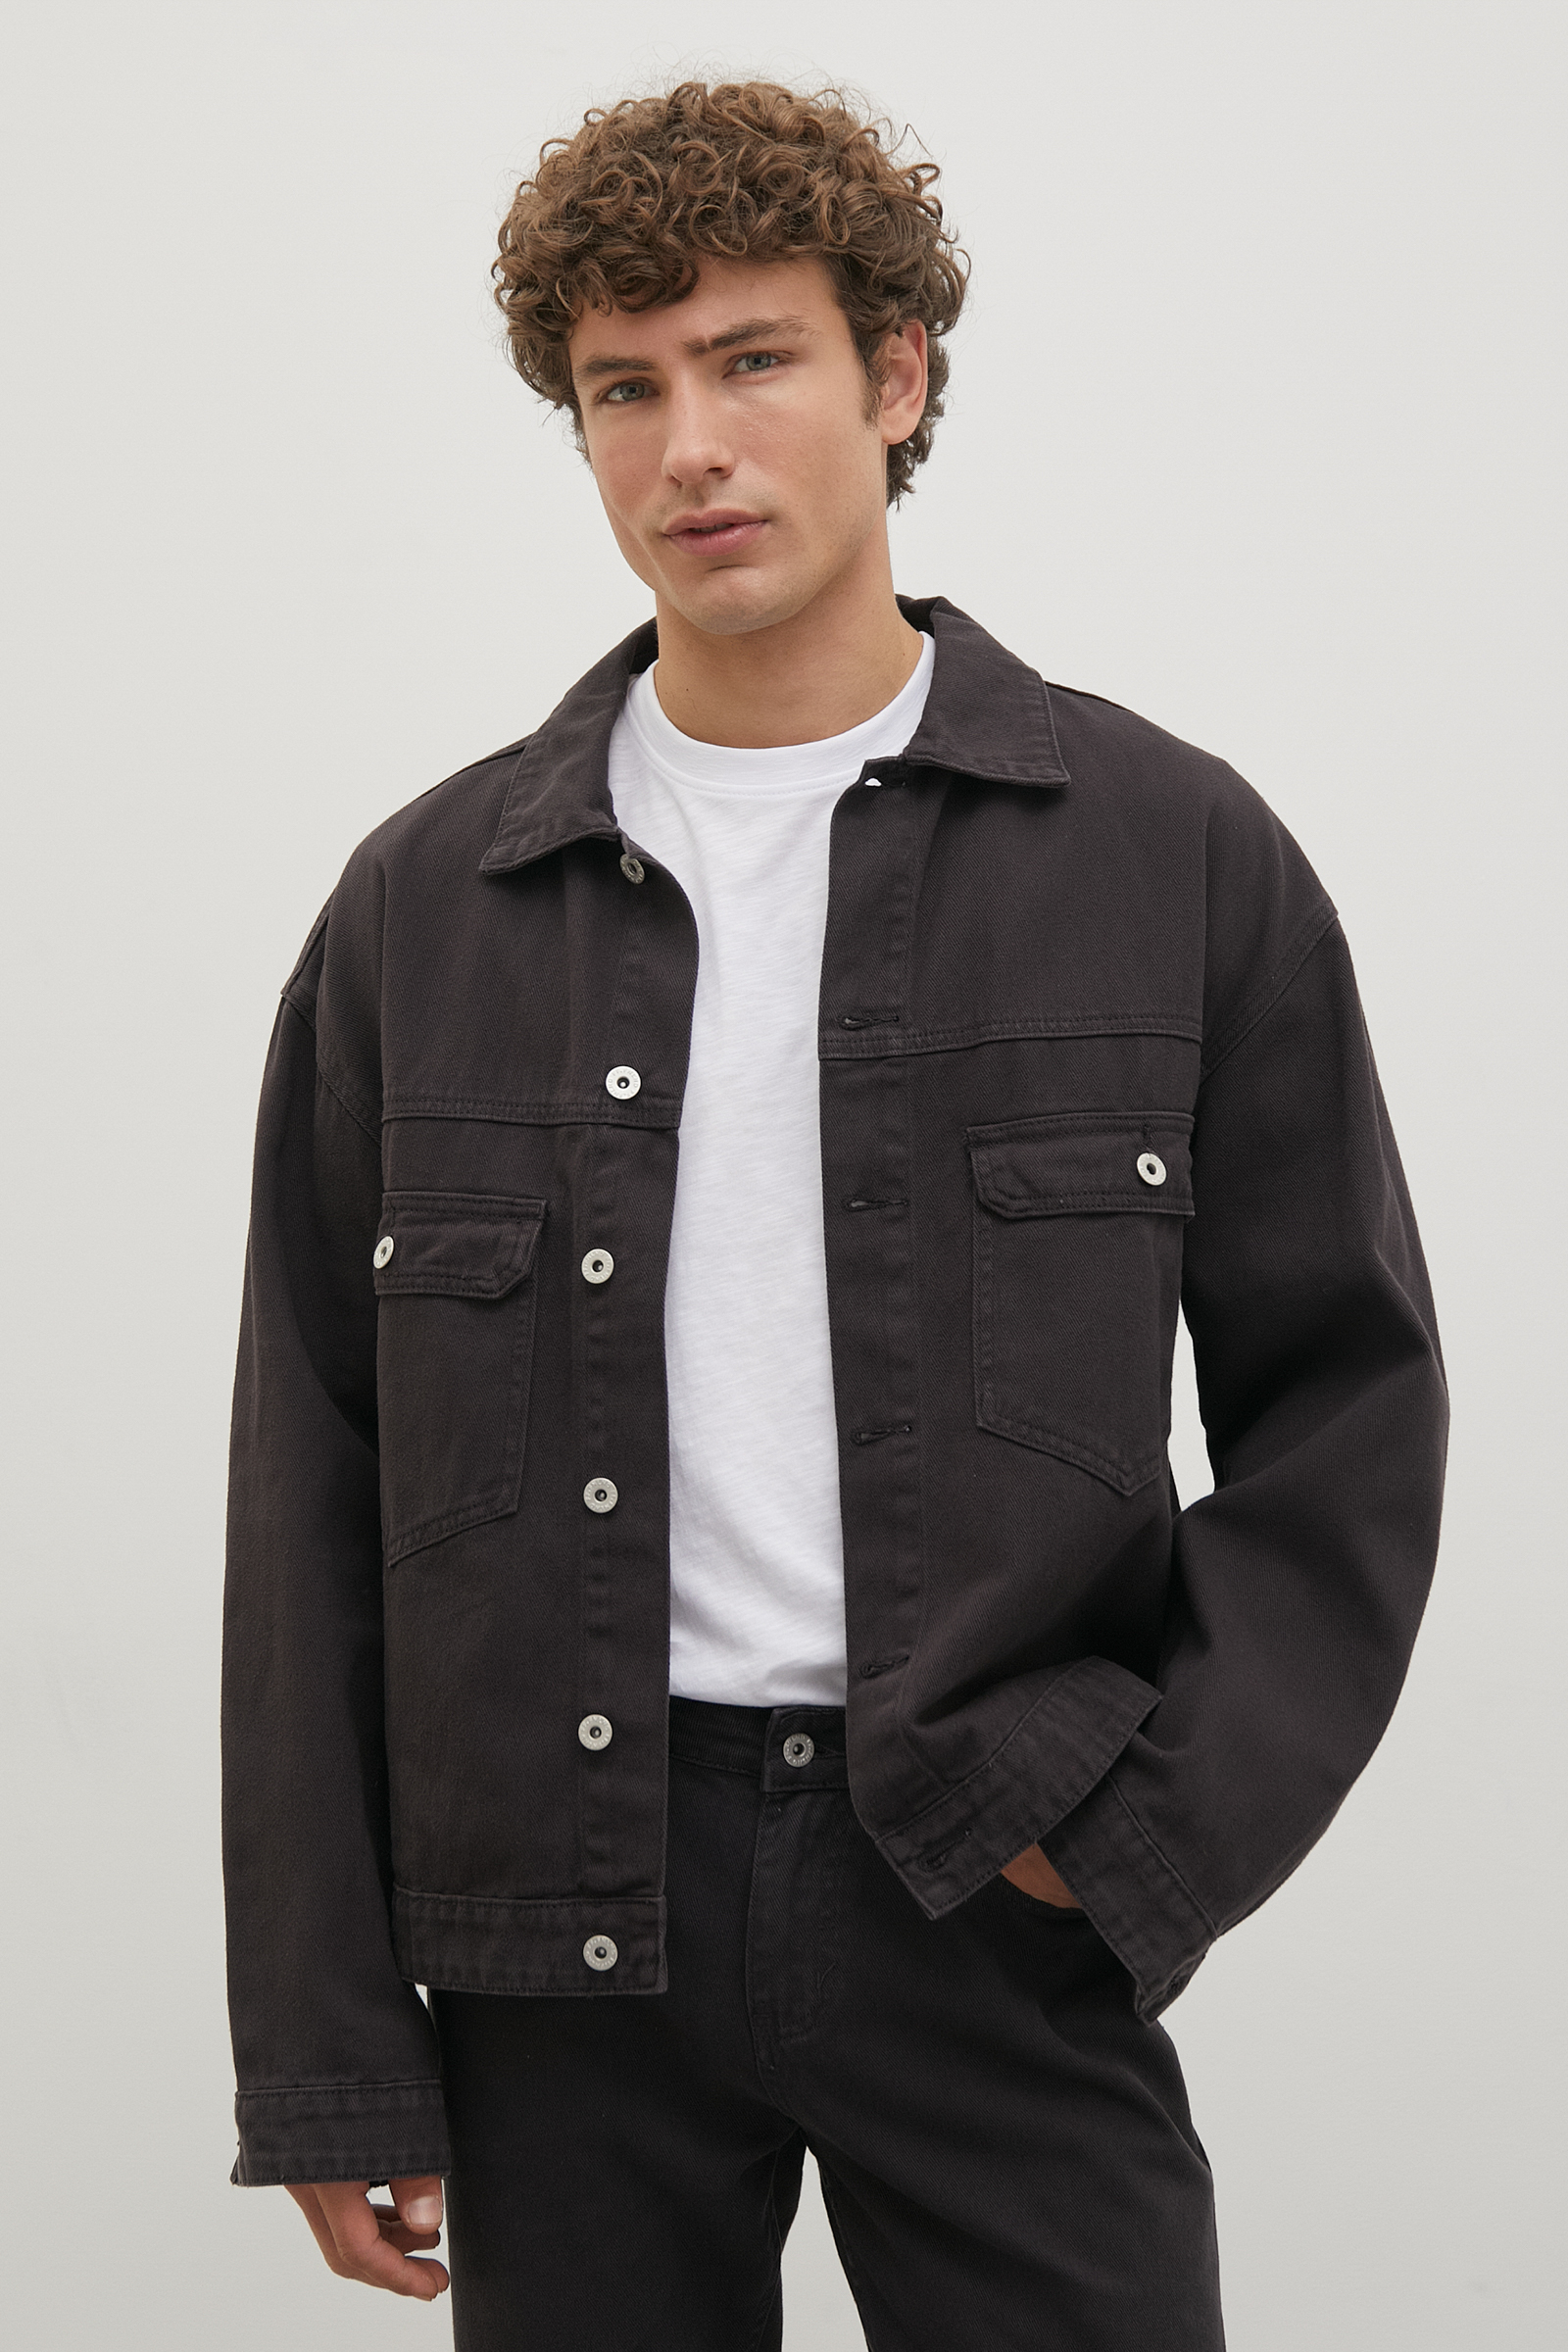 Джинсовая куртка мужская Finn Flare FSD25001 серая L